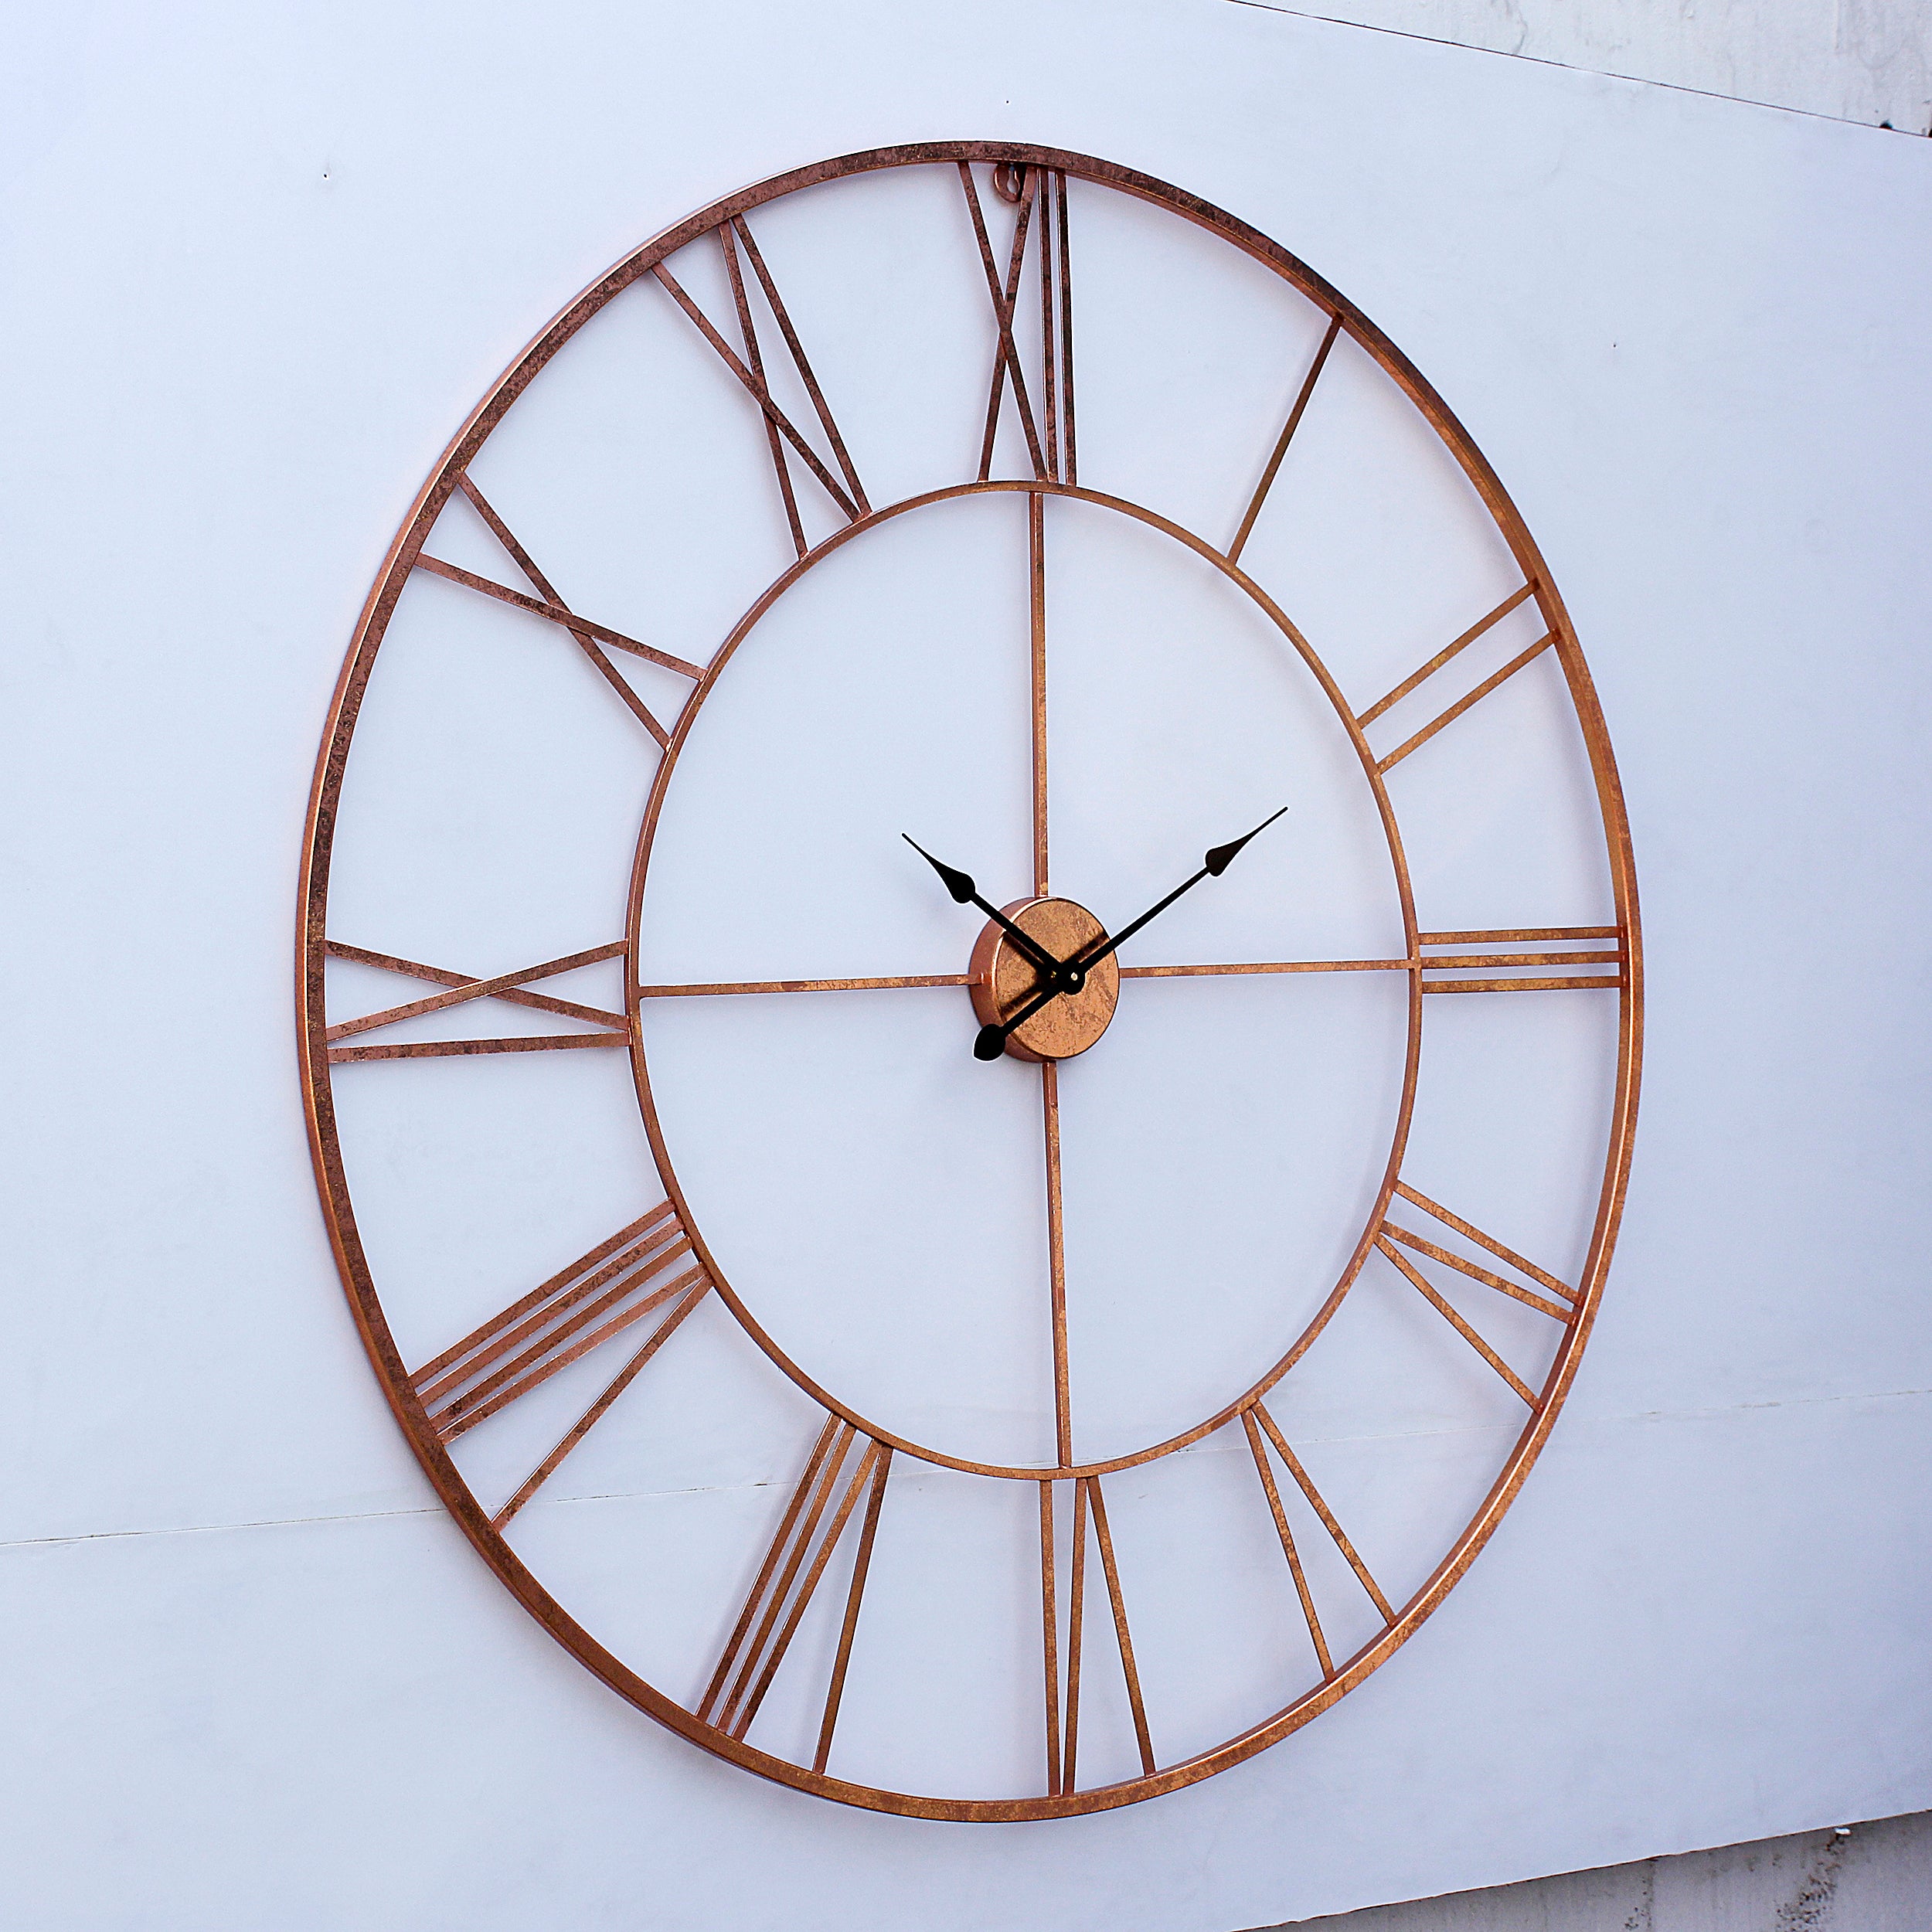 Craftter Copper 40 Inch Handmade Wall Clock Metal Wall Art